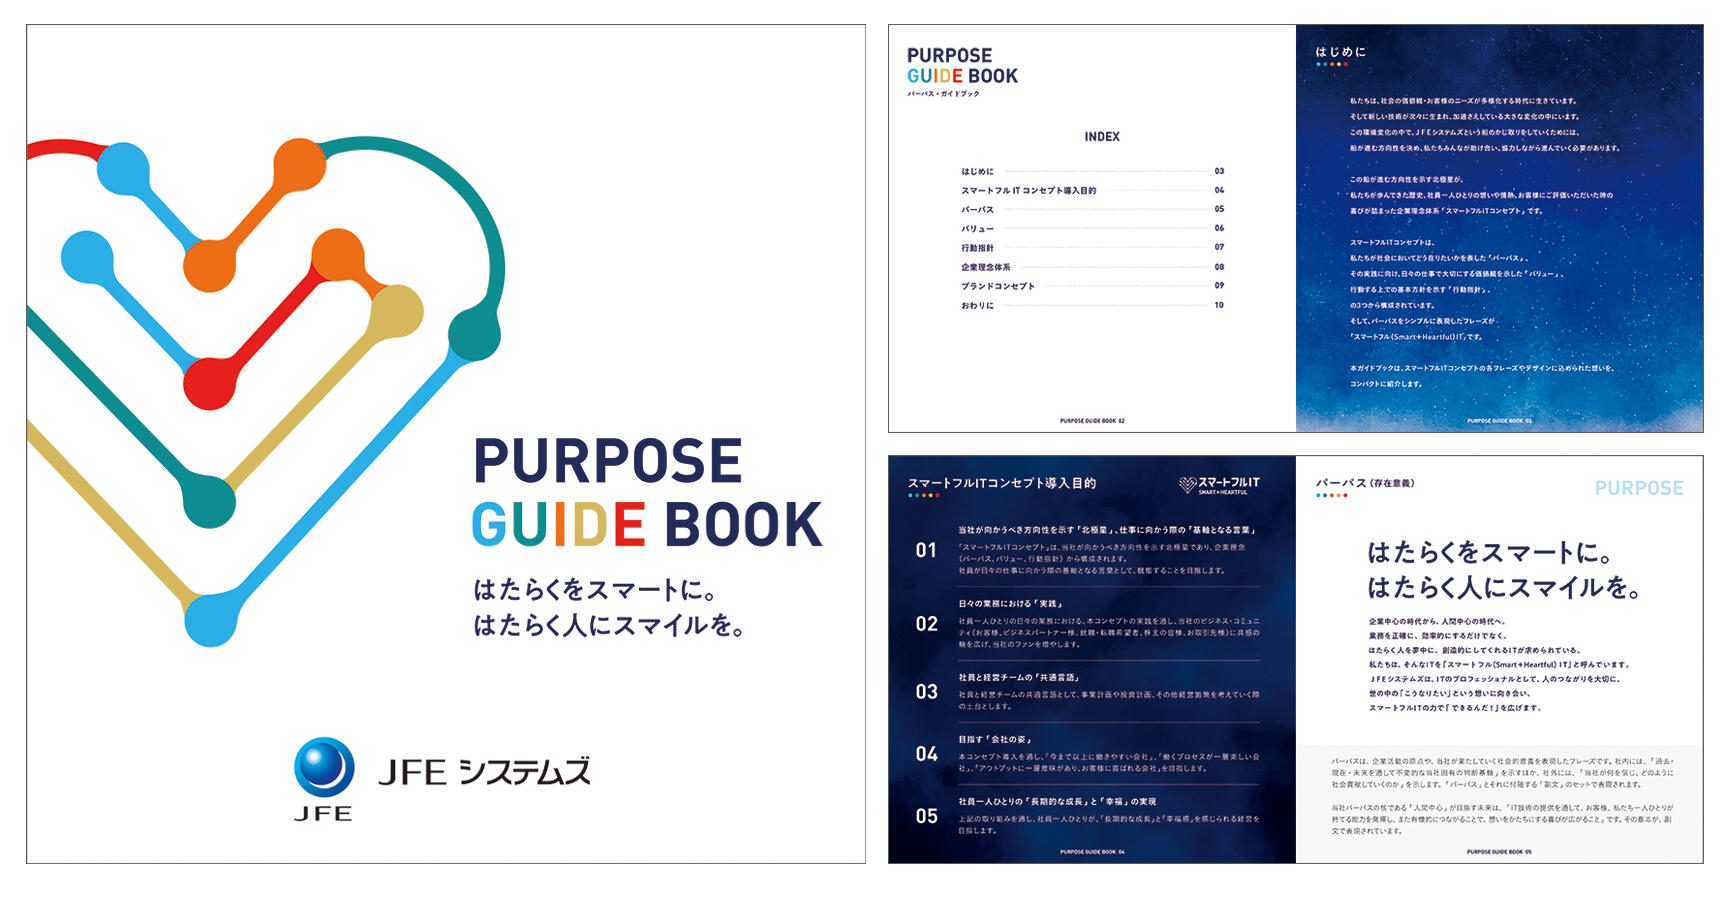 PURPOSE GUIDE BOOK（パーパス・ガイドブック）イメージ